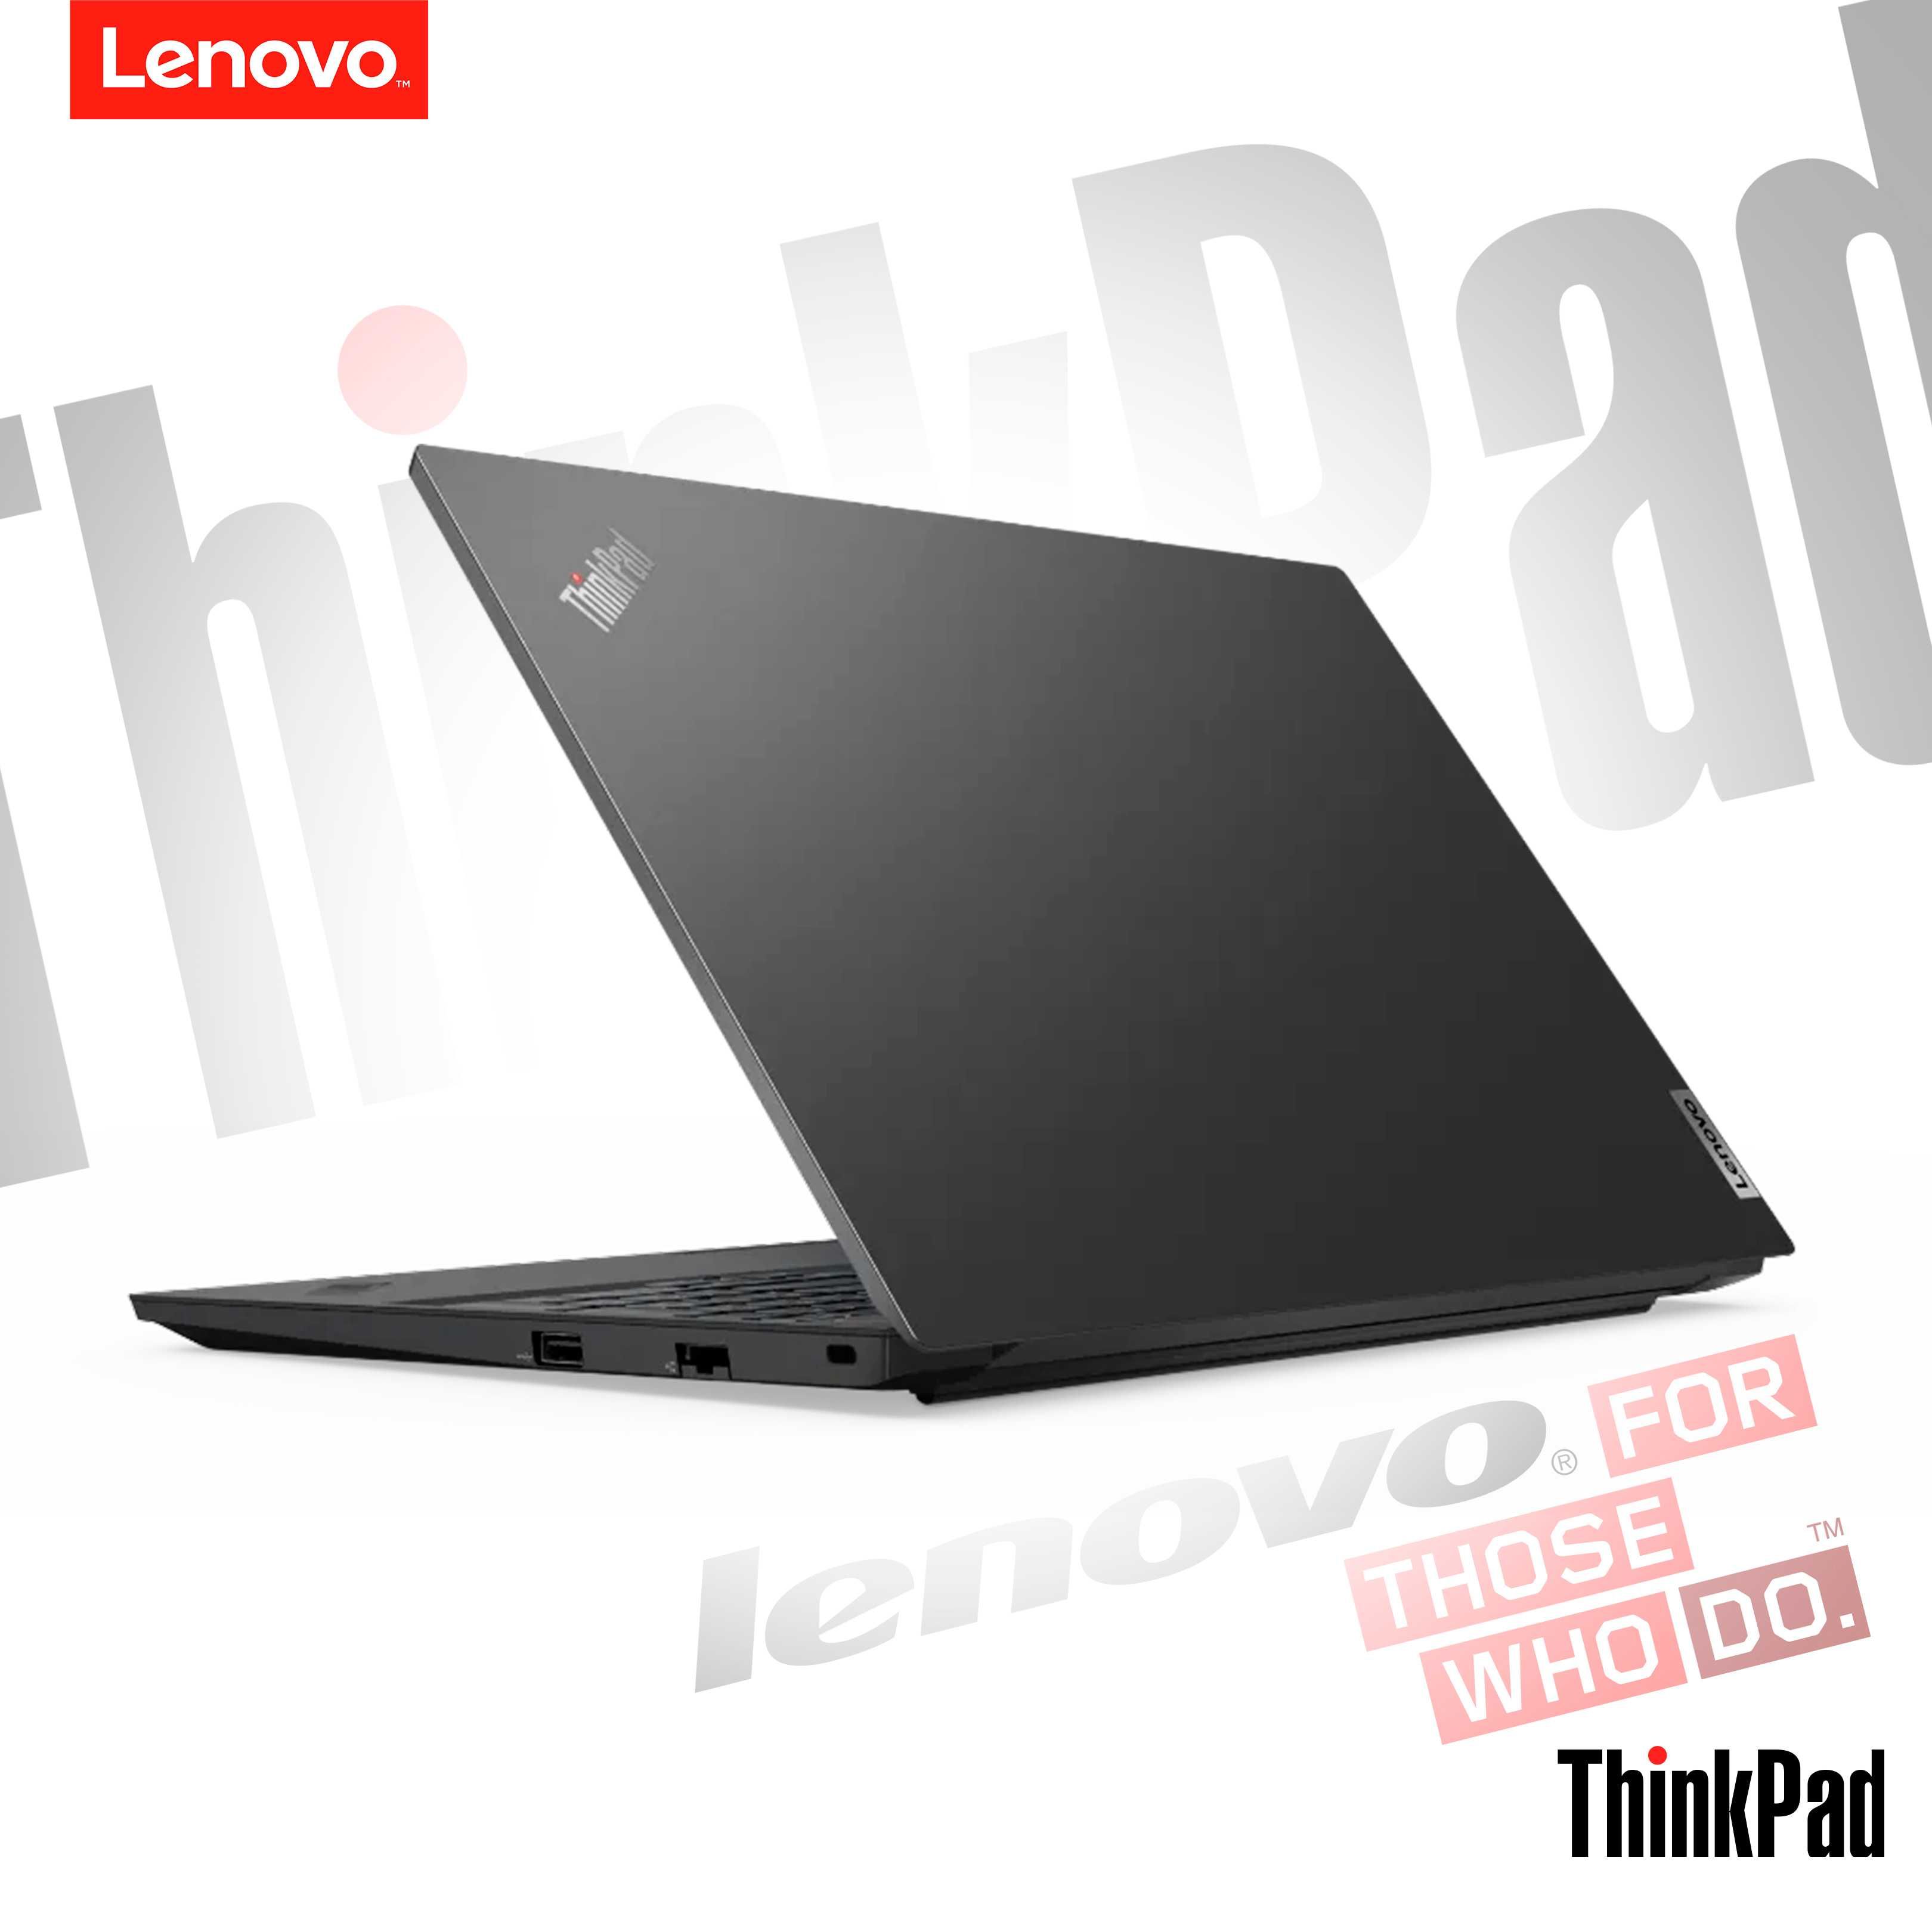 ThinkPad E15 Gen 4 Intel®Core™ i5-1235U 8/256GB MX550 2GB 15.6 FHD IPS